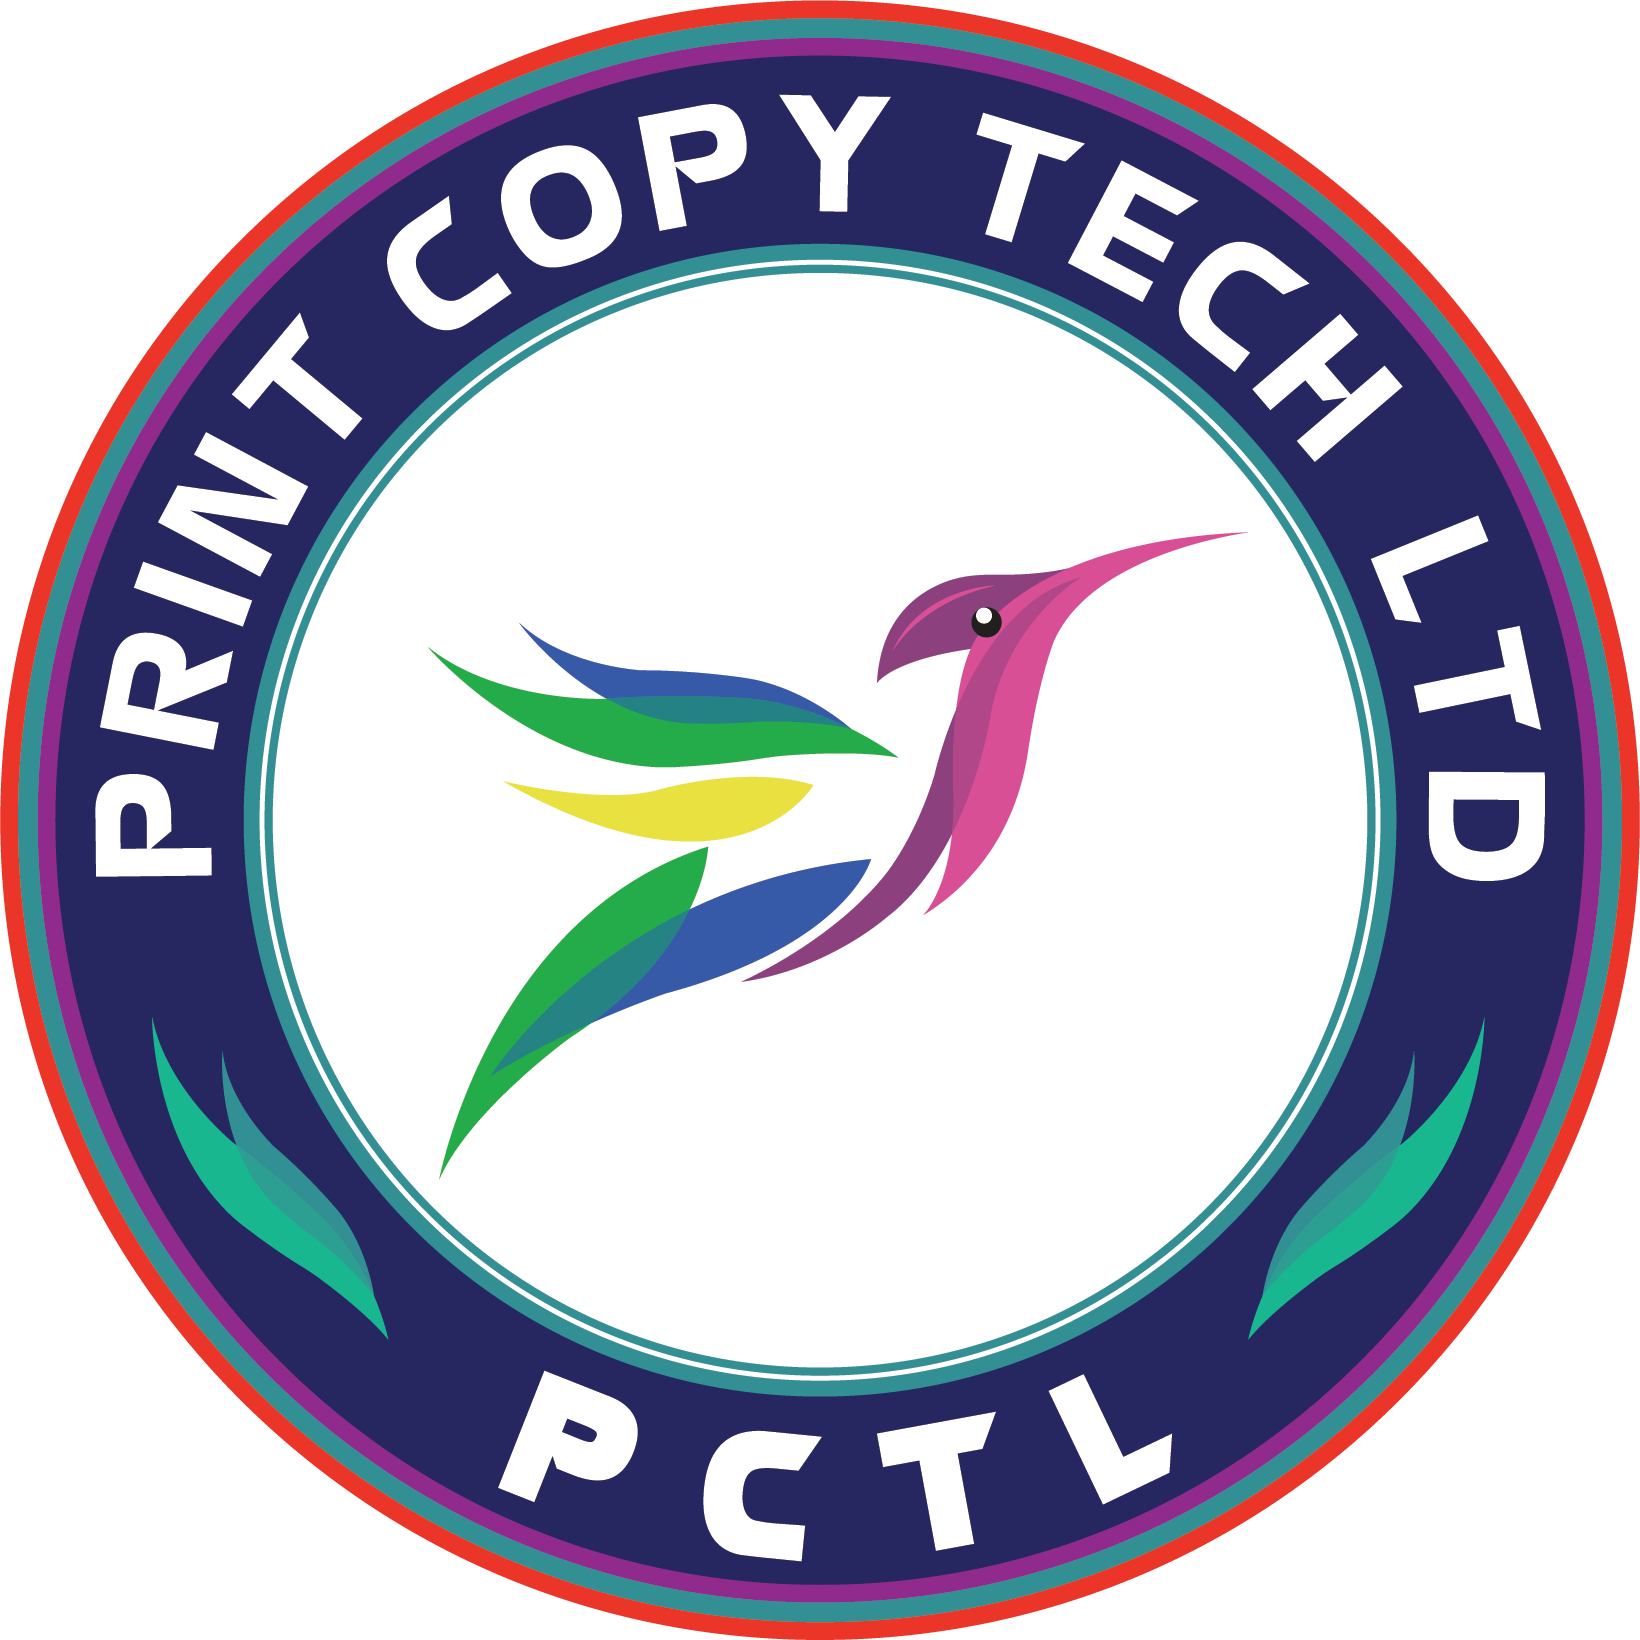 Print Copy Tech